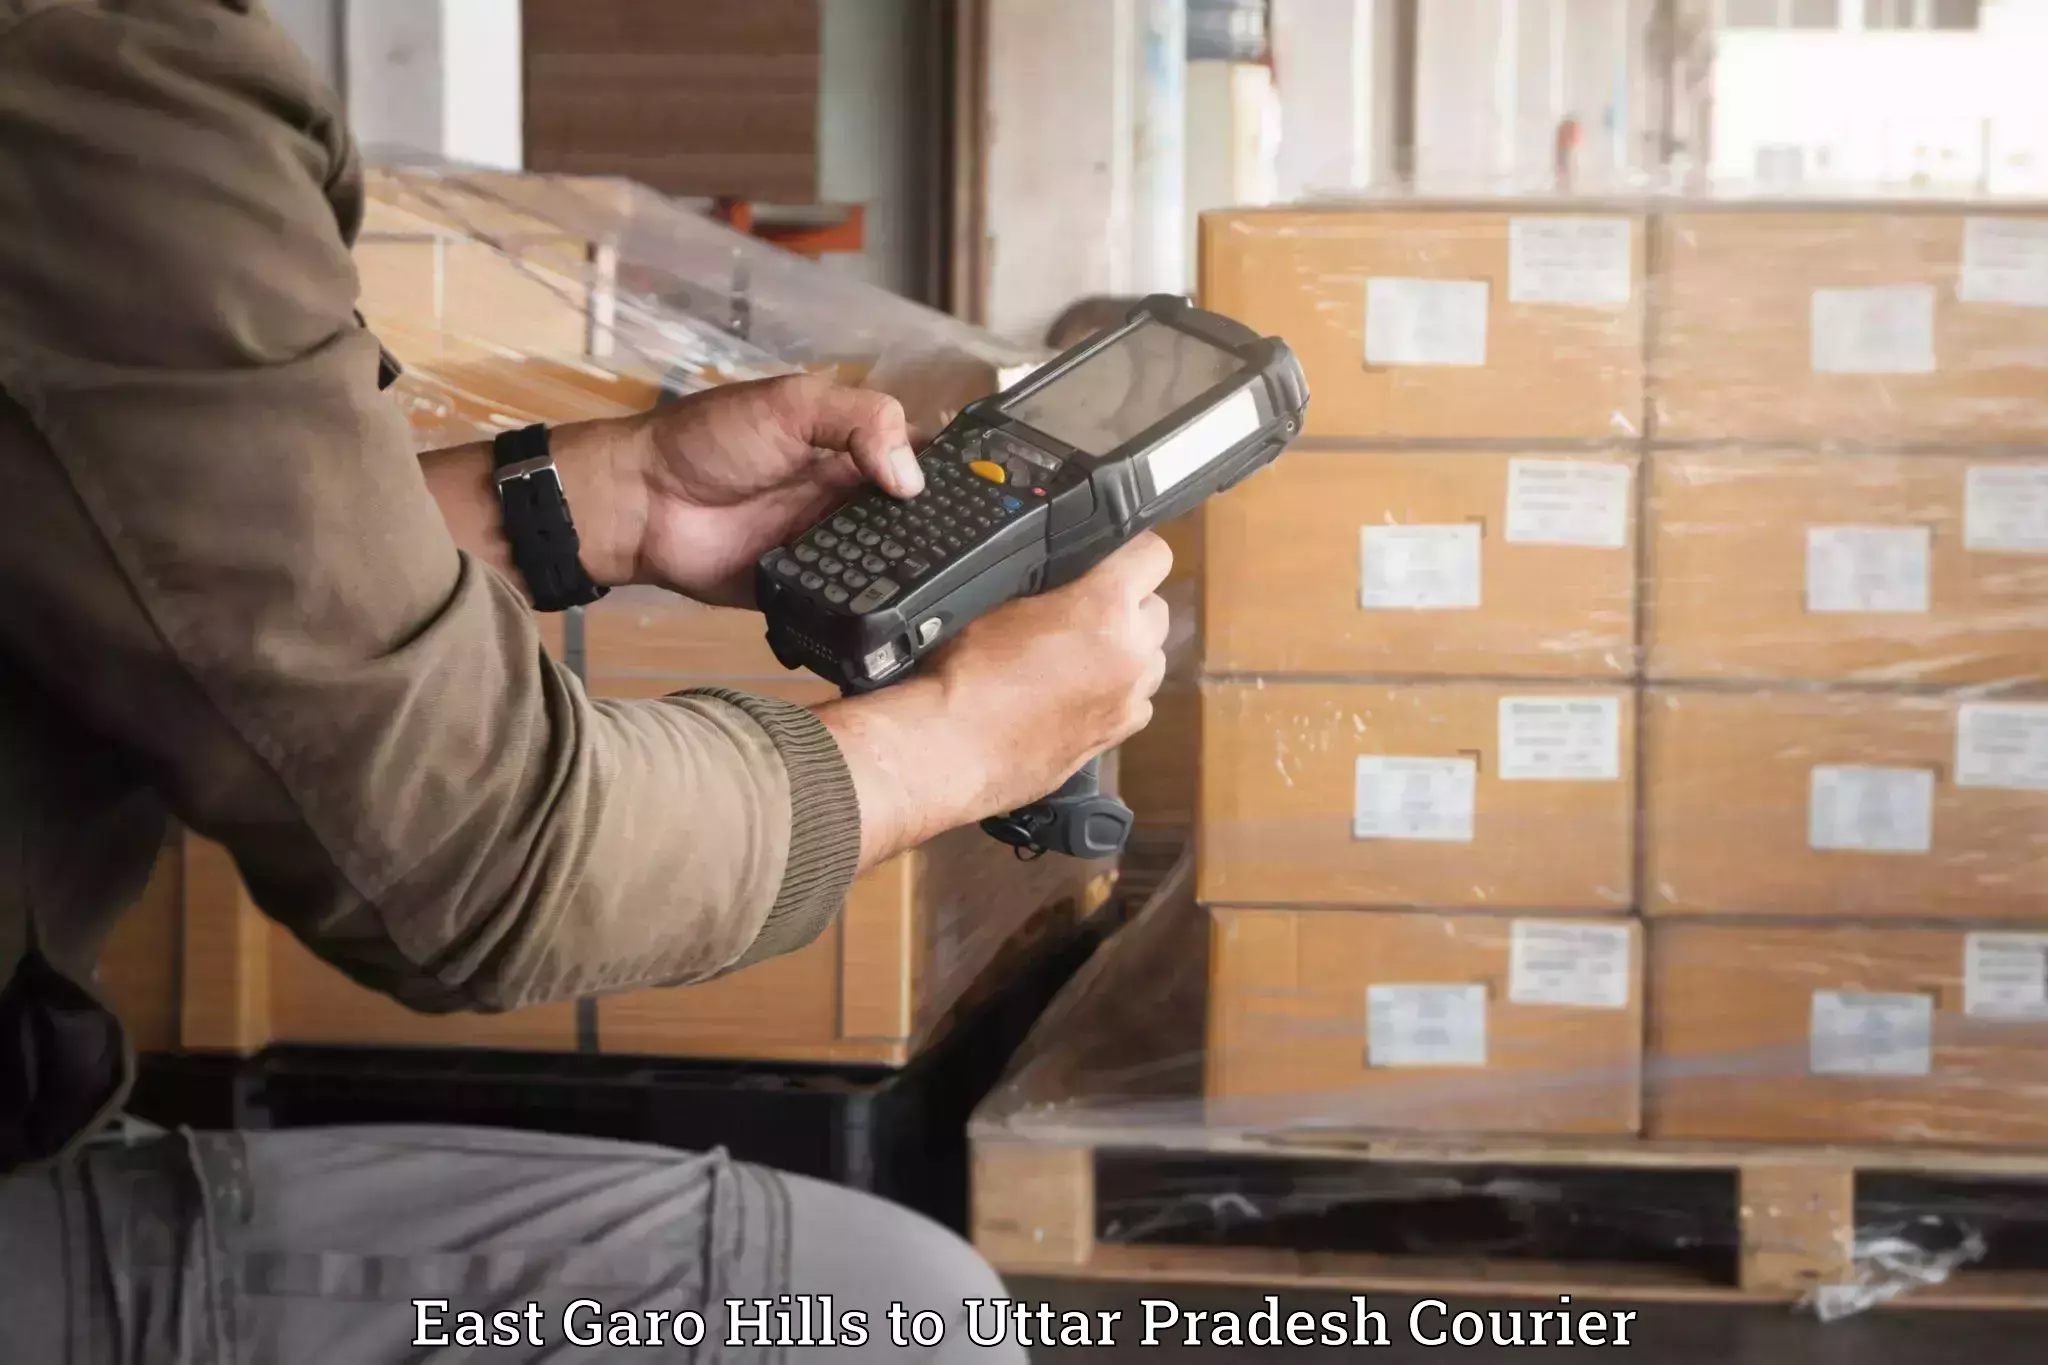 Electronic items luggage shipping East Garo Hills to Pratapgarh